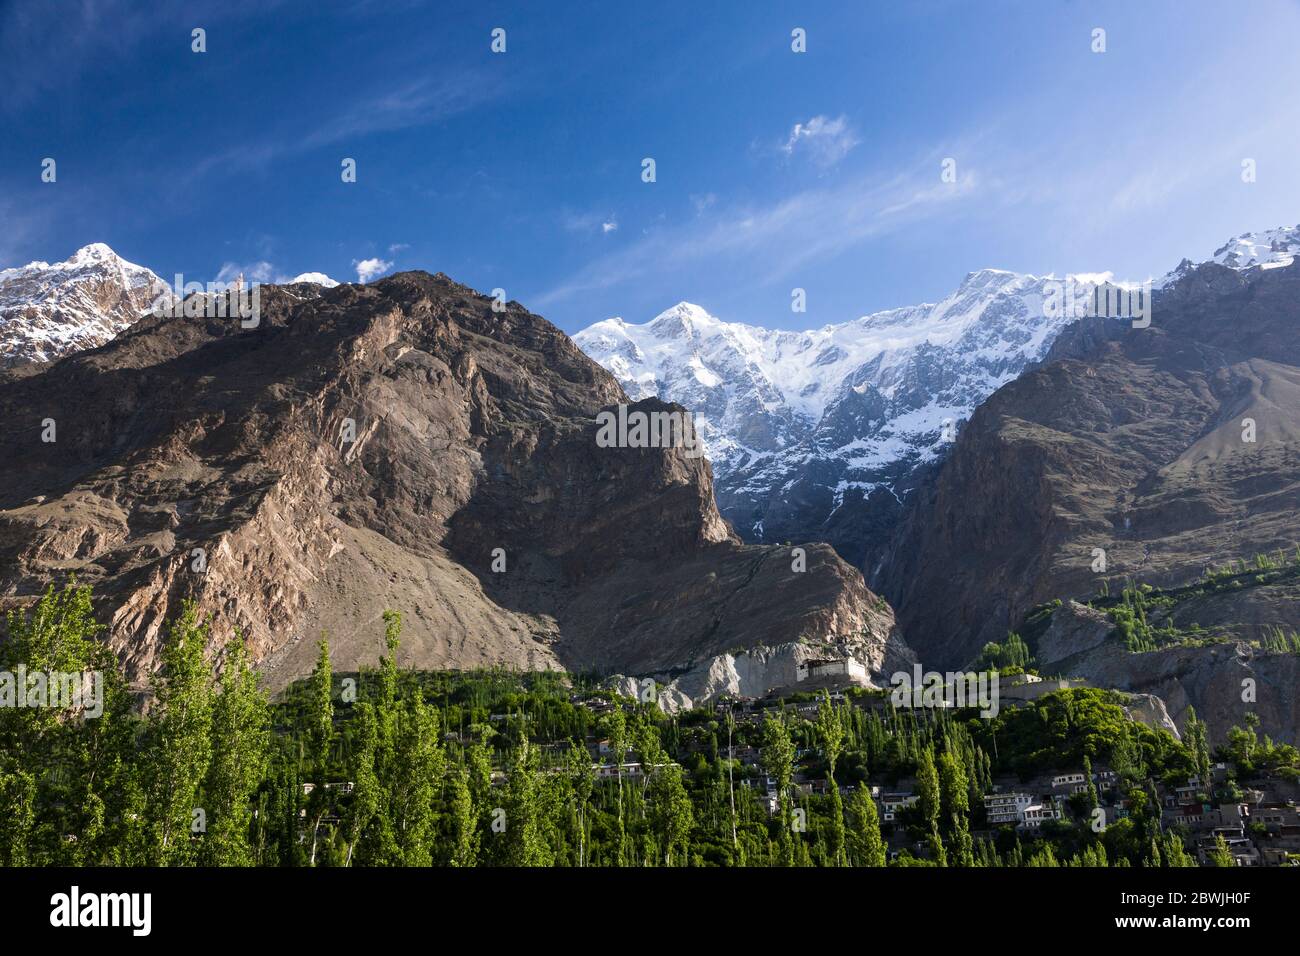 Baltit fort and Ultar Sar mountains, Hunza, Karimabad, Hunza Nagar, Gilgit-Baltistan Province, Pakistan, South Asia, Asia Stock Photo